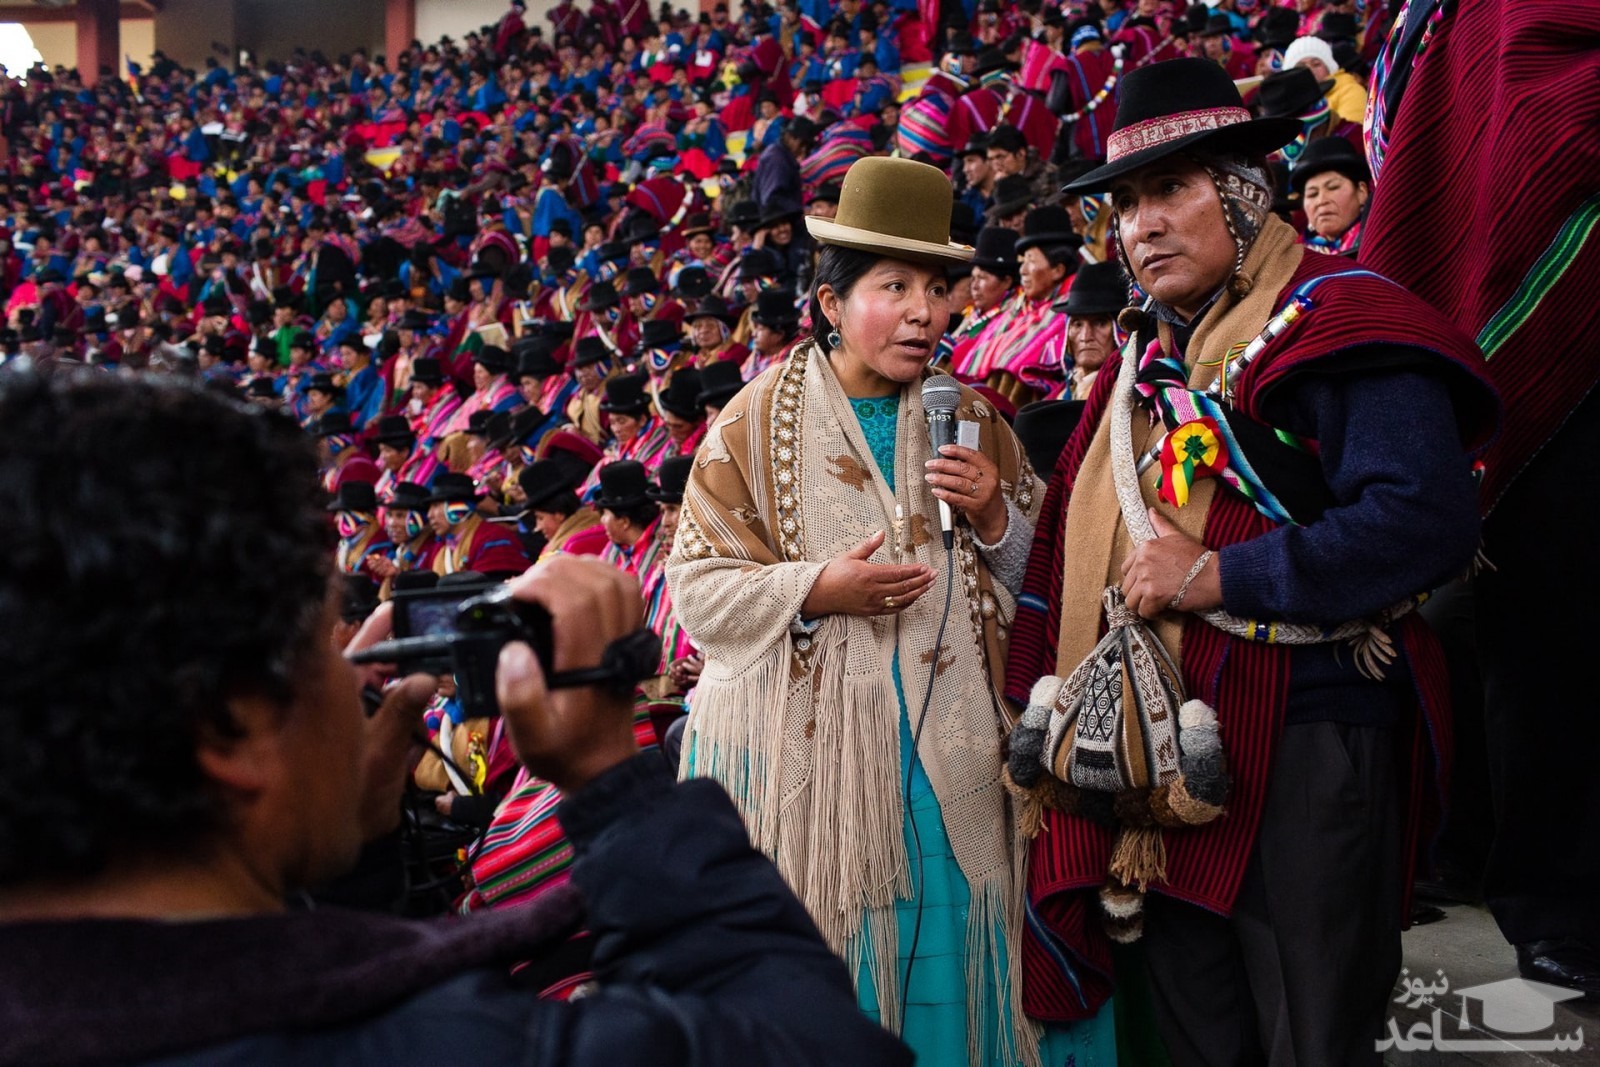 پوشش بومی مردم بولیوی